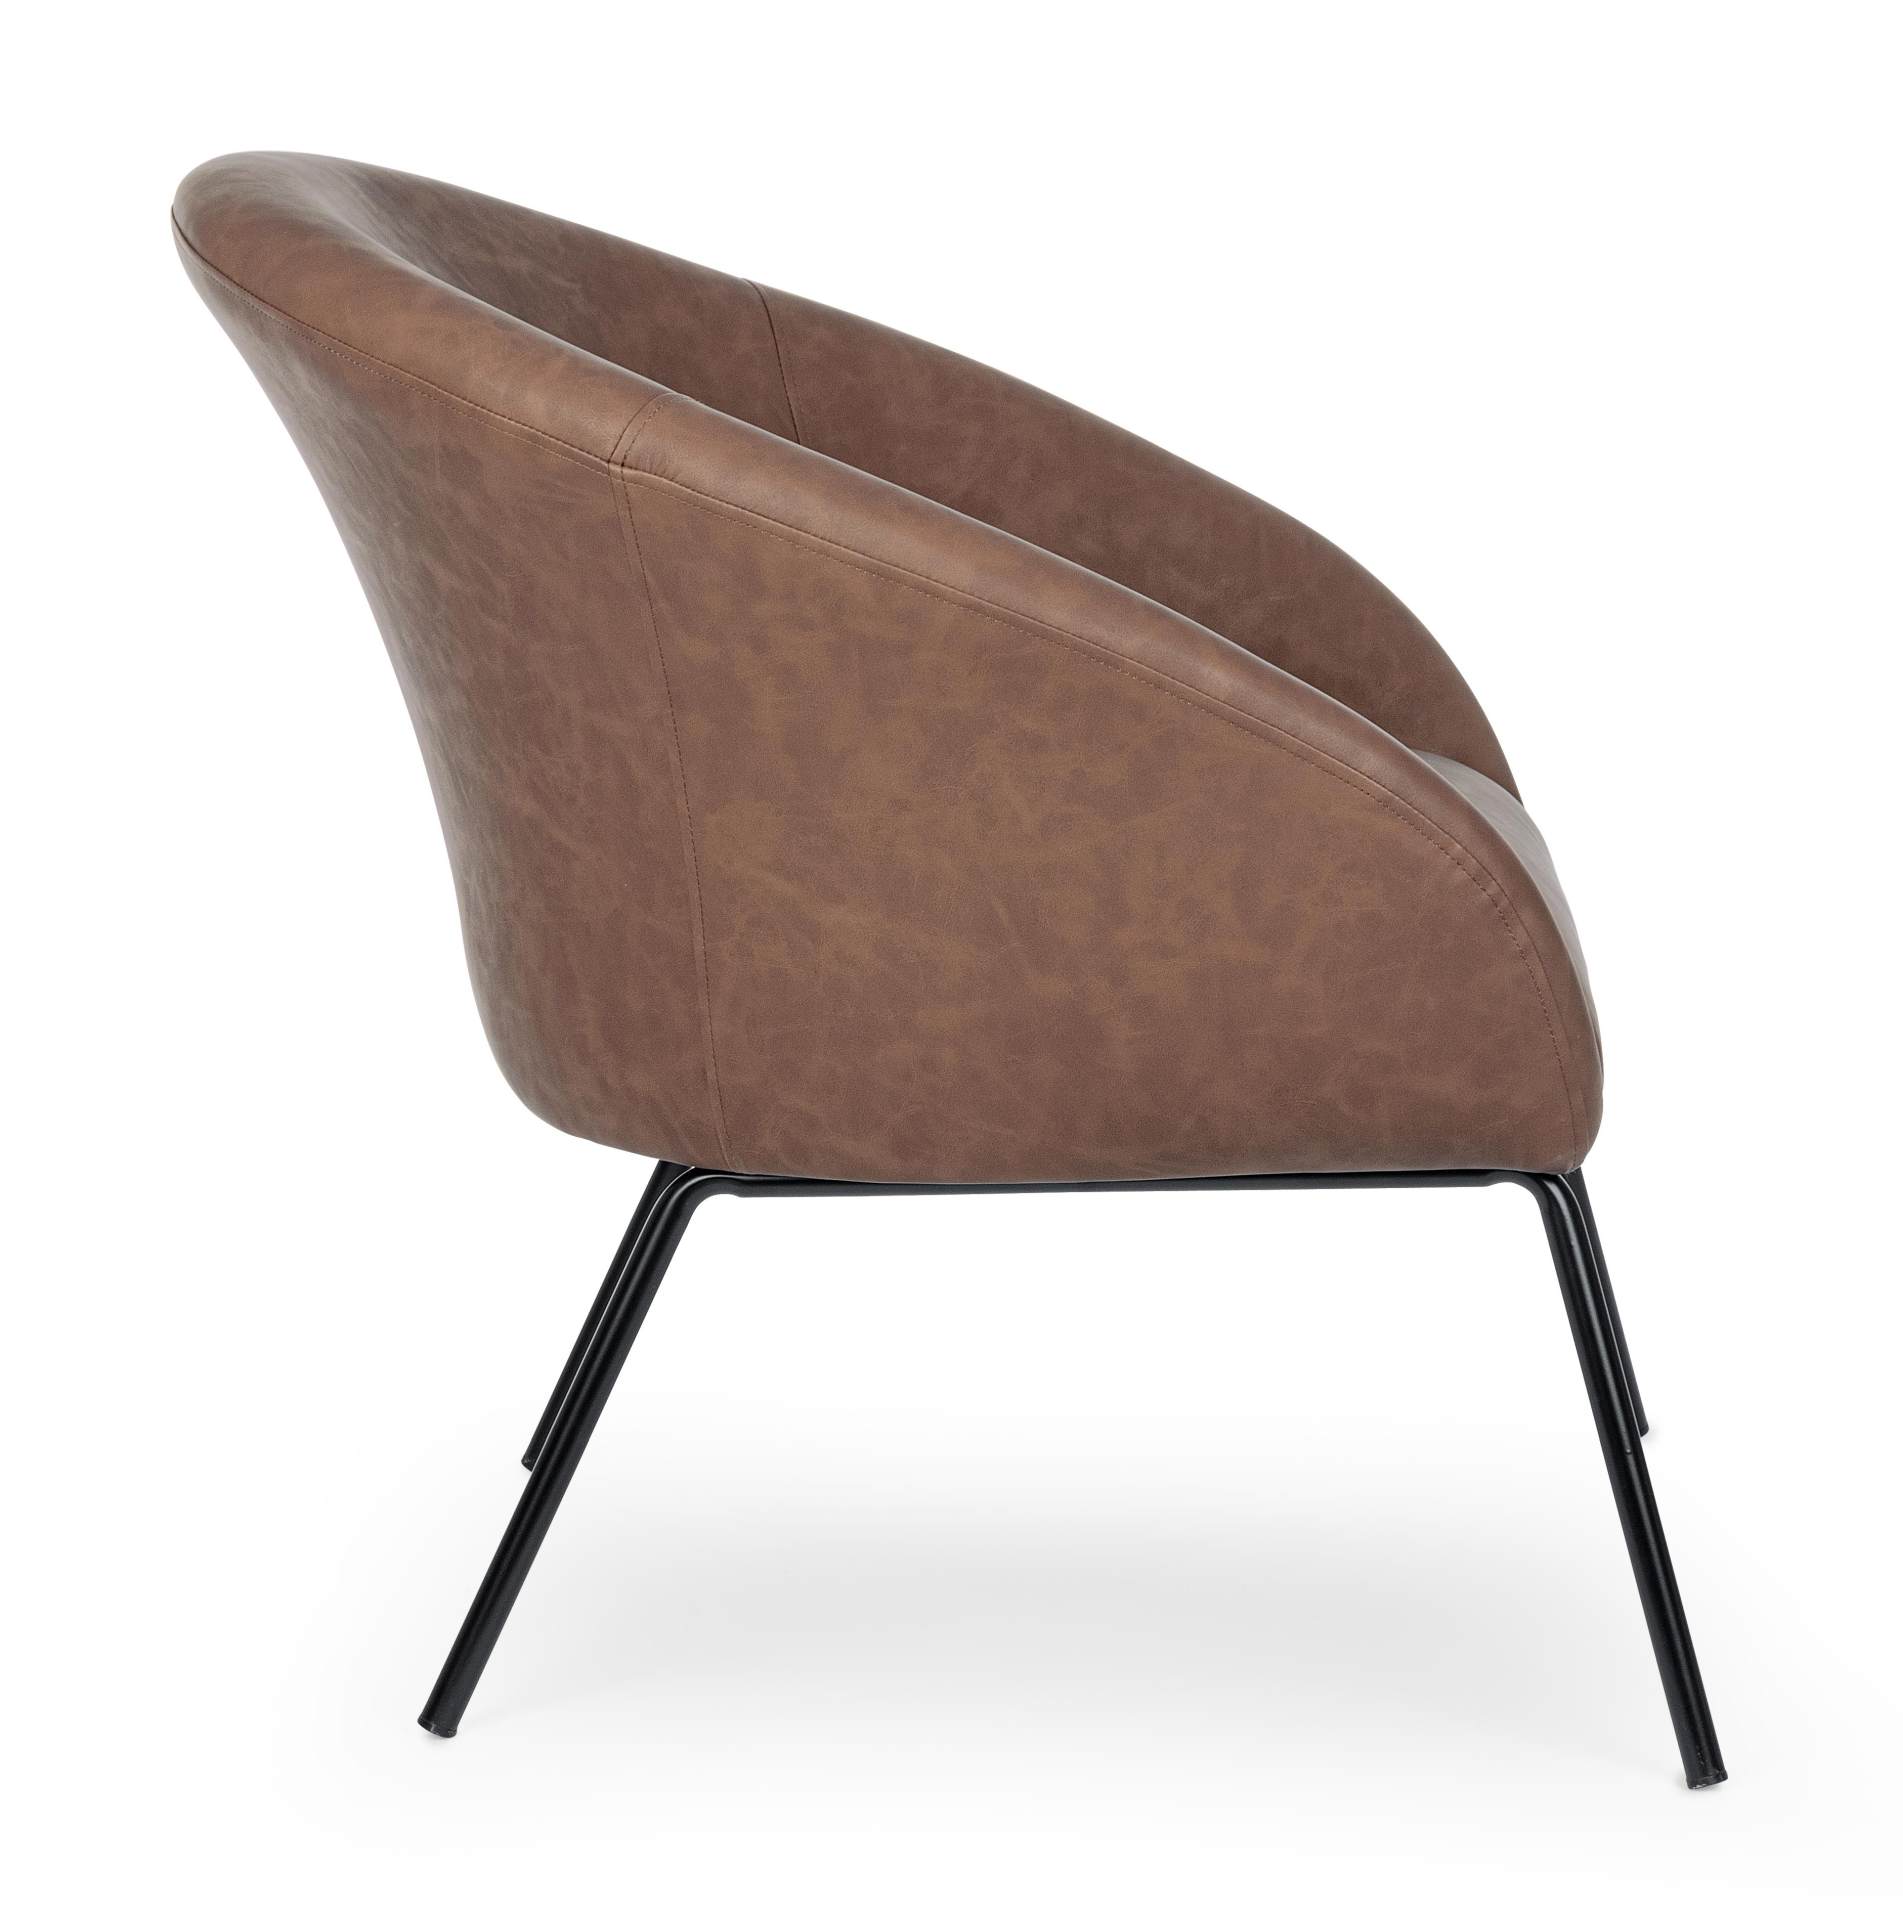 Der Sessel Aiko überzeugt mit seinem modernen Design. Gefertigt wurde er aus Kunstleder, welches einen Cognac Farbton besitzt. Das Gestell ist aus Metall und hat eine schwarze Farbe. Der Sessel besitzt eine Sitzhöhe von 45 cm. Die Breite beträgt 80 cm.